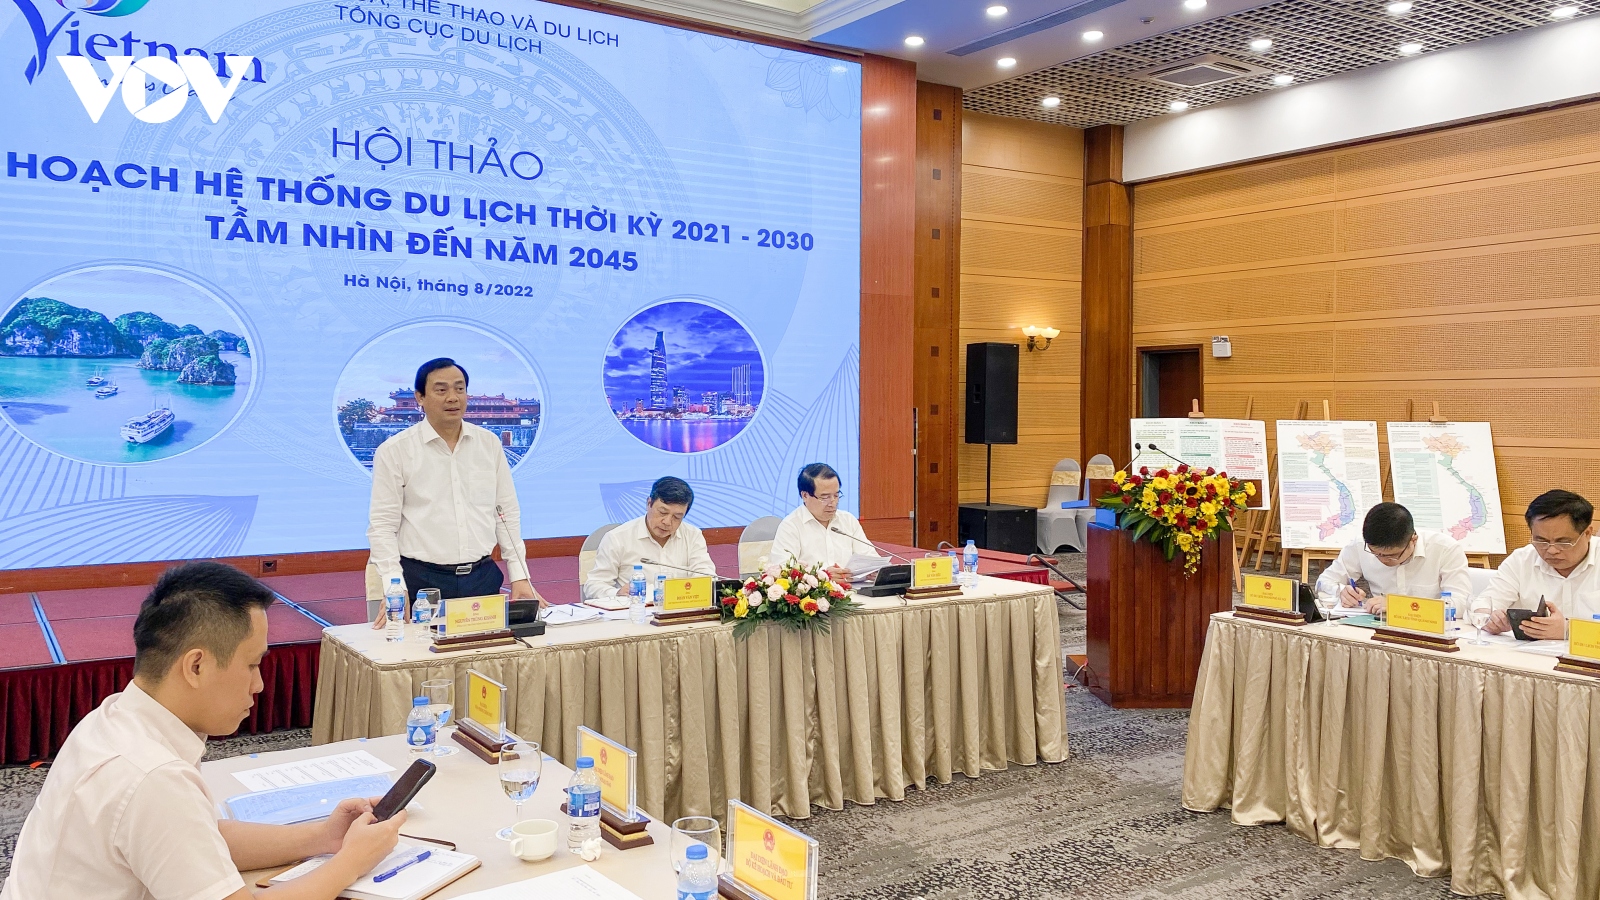 Thêm 3 dòng sản phẩm mới trong quy hoạch du lịch Việt Nam thời kỳ 2021 - 2030